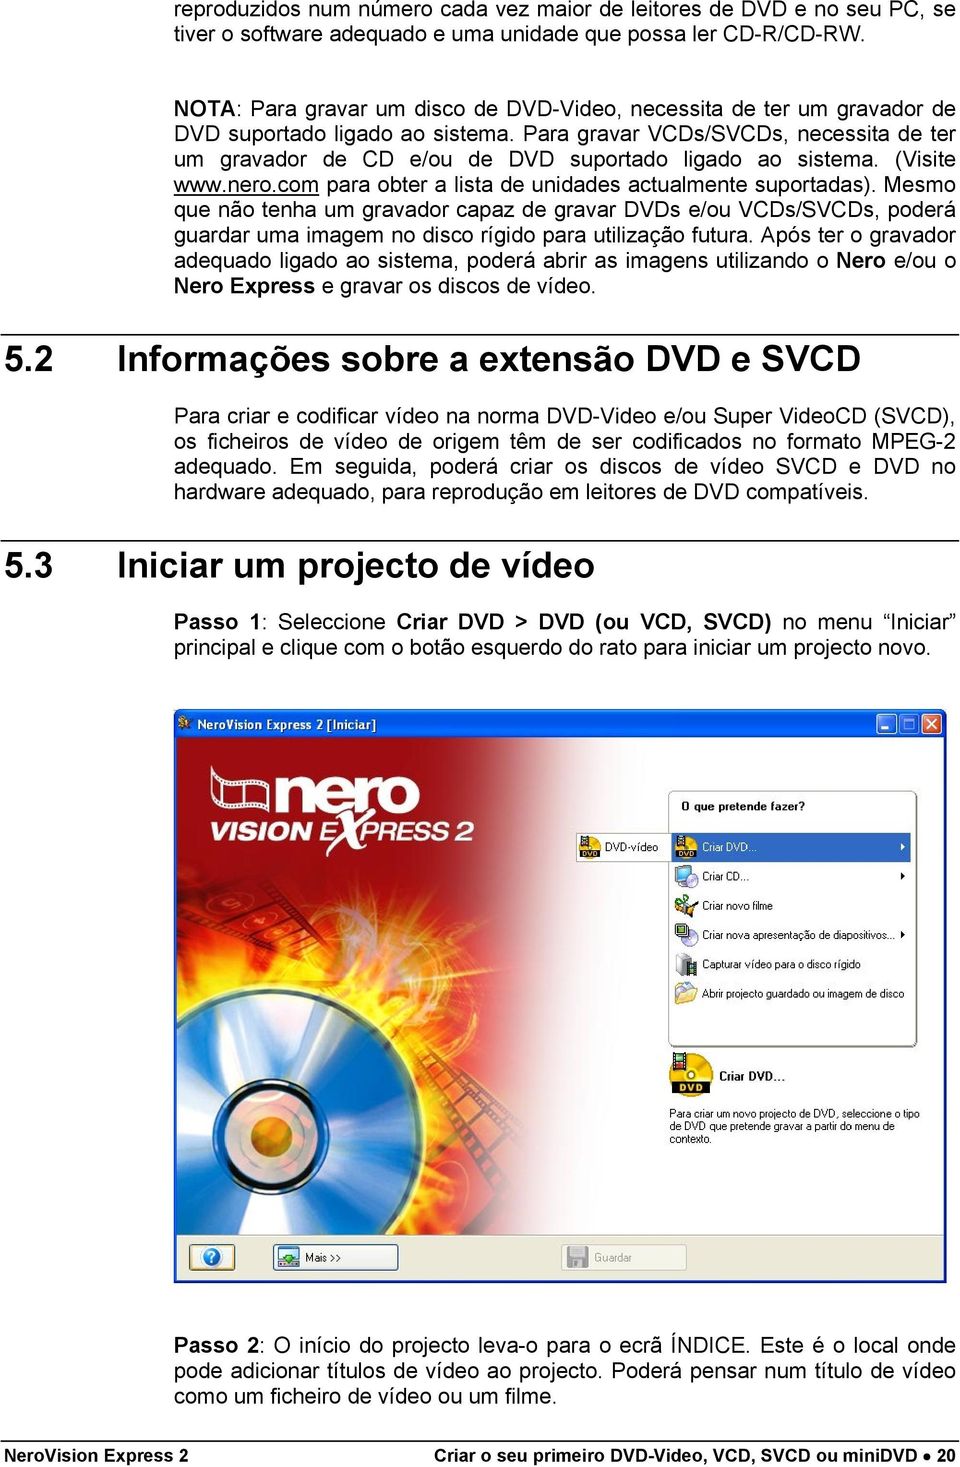 Para gravar VCDs/SVCDs, necessita de ter um gravador de CD e/ou de DVD suportado ligado ao sistema. (Visite www.nero.com para obter a lista de unidades actualmente suportadas).